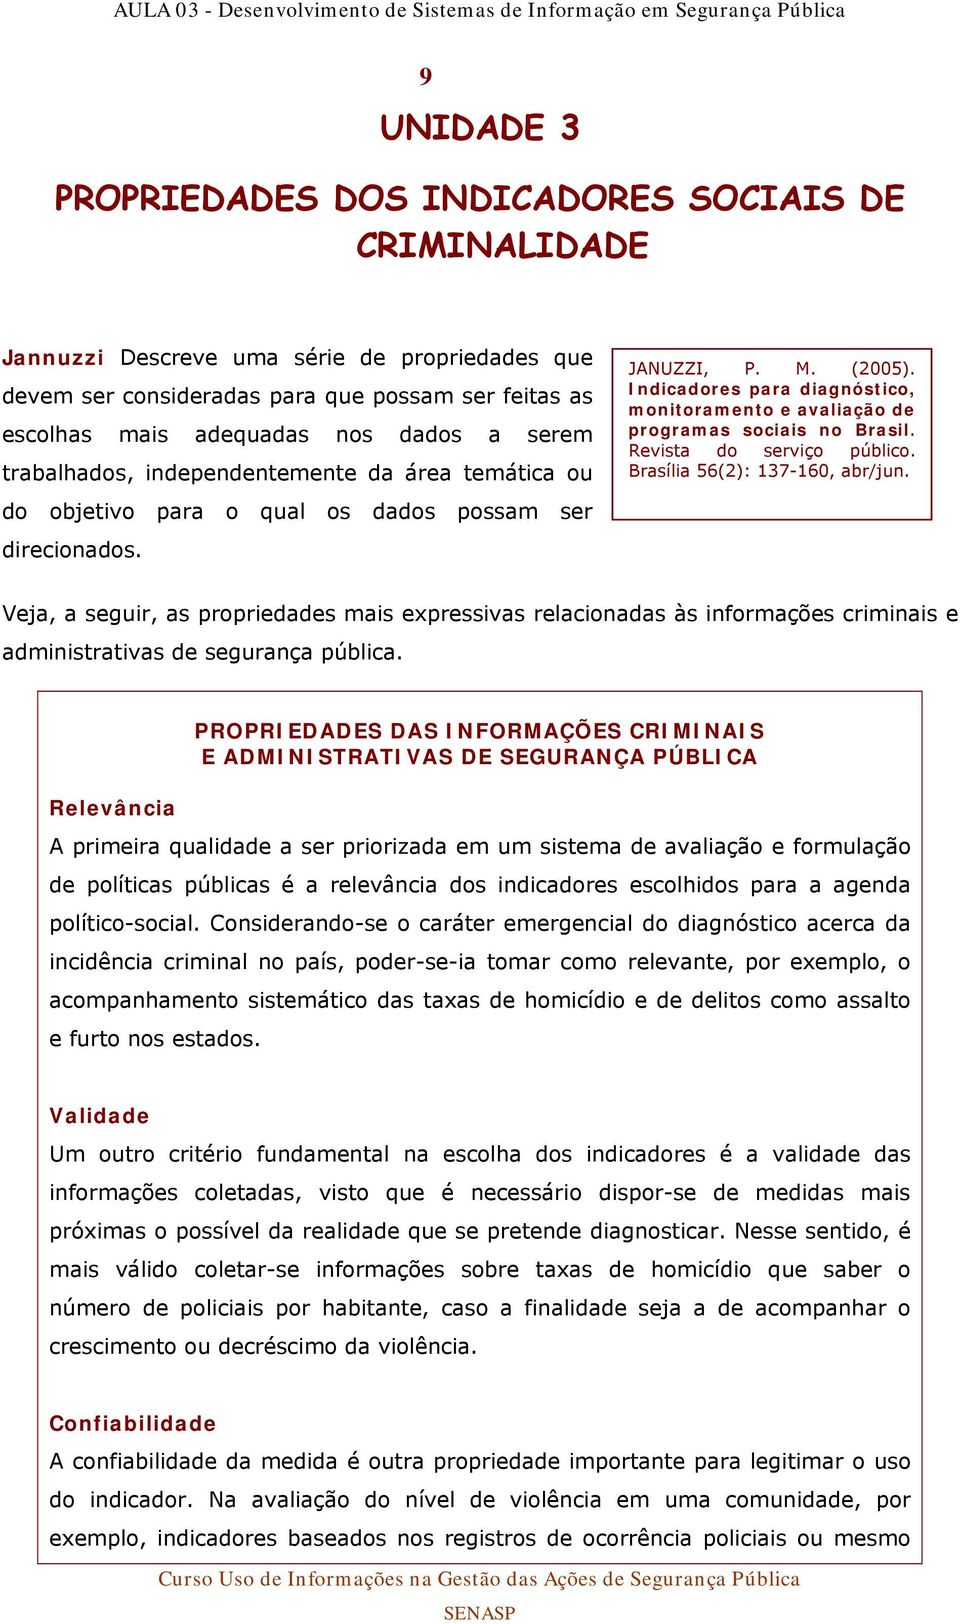 Indicadores para diagnóstico, monitoramento e avaliação de programas sociais no Brasil. Revista do serviço público. Brasília 56(2): 137-160, abr/jun.